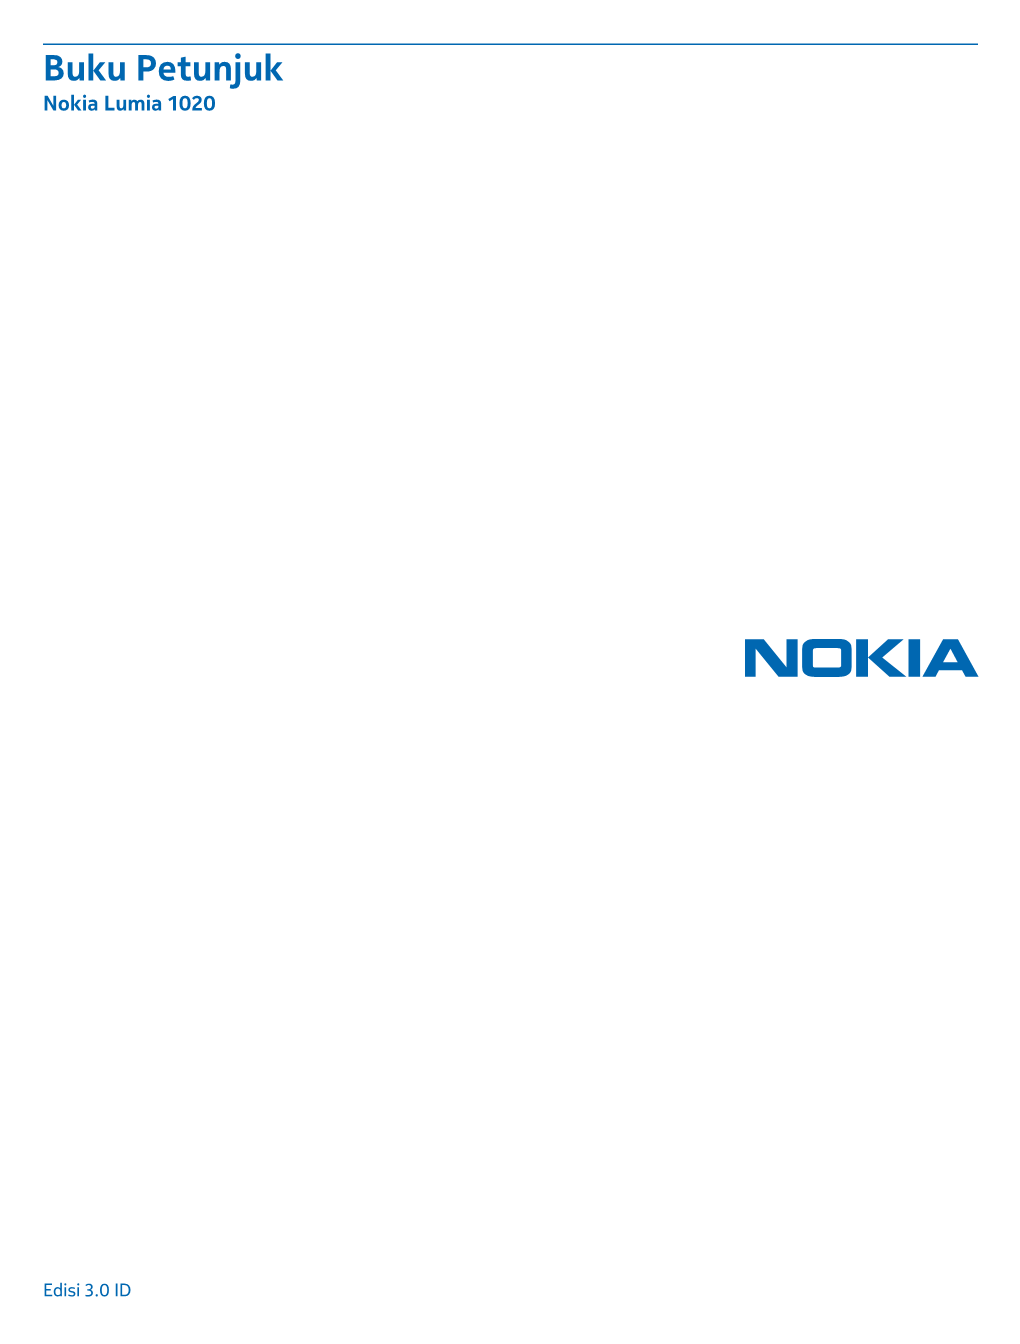 Buku Petunjuk Nokia Lumia 1020